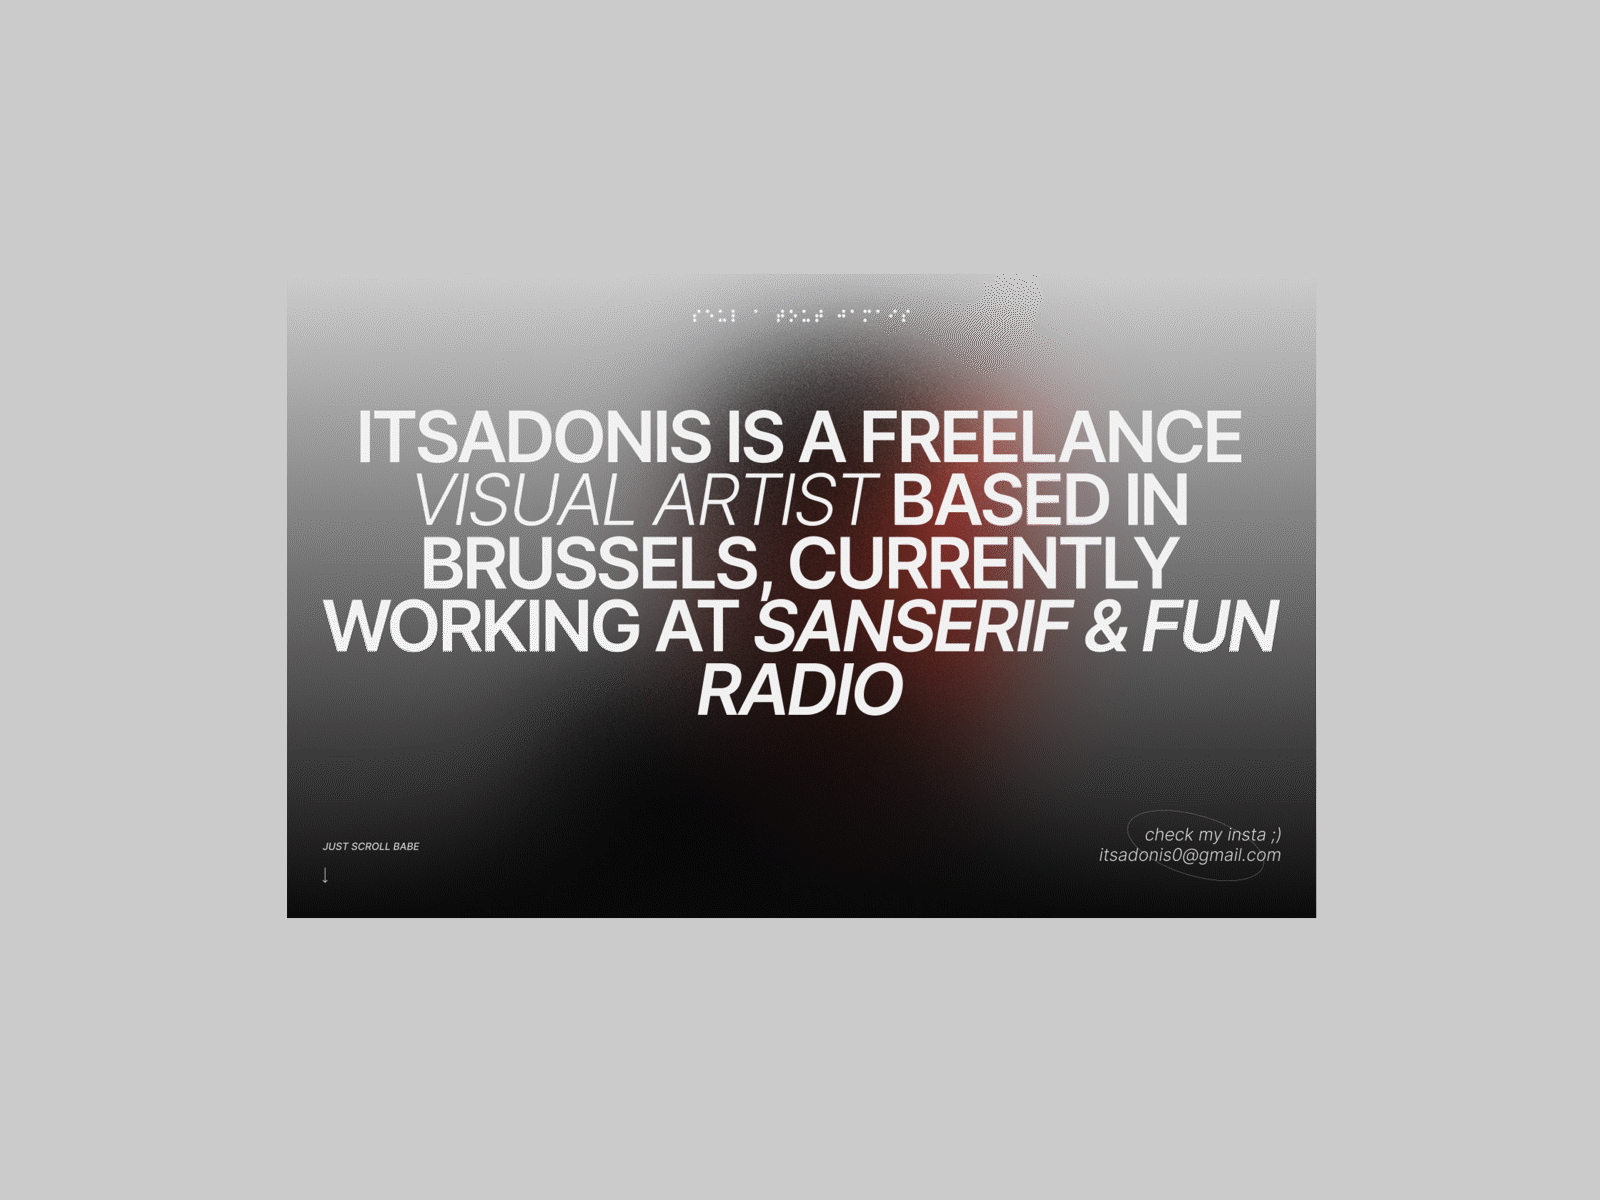 ITSADONIS' Website